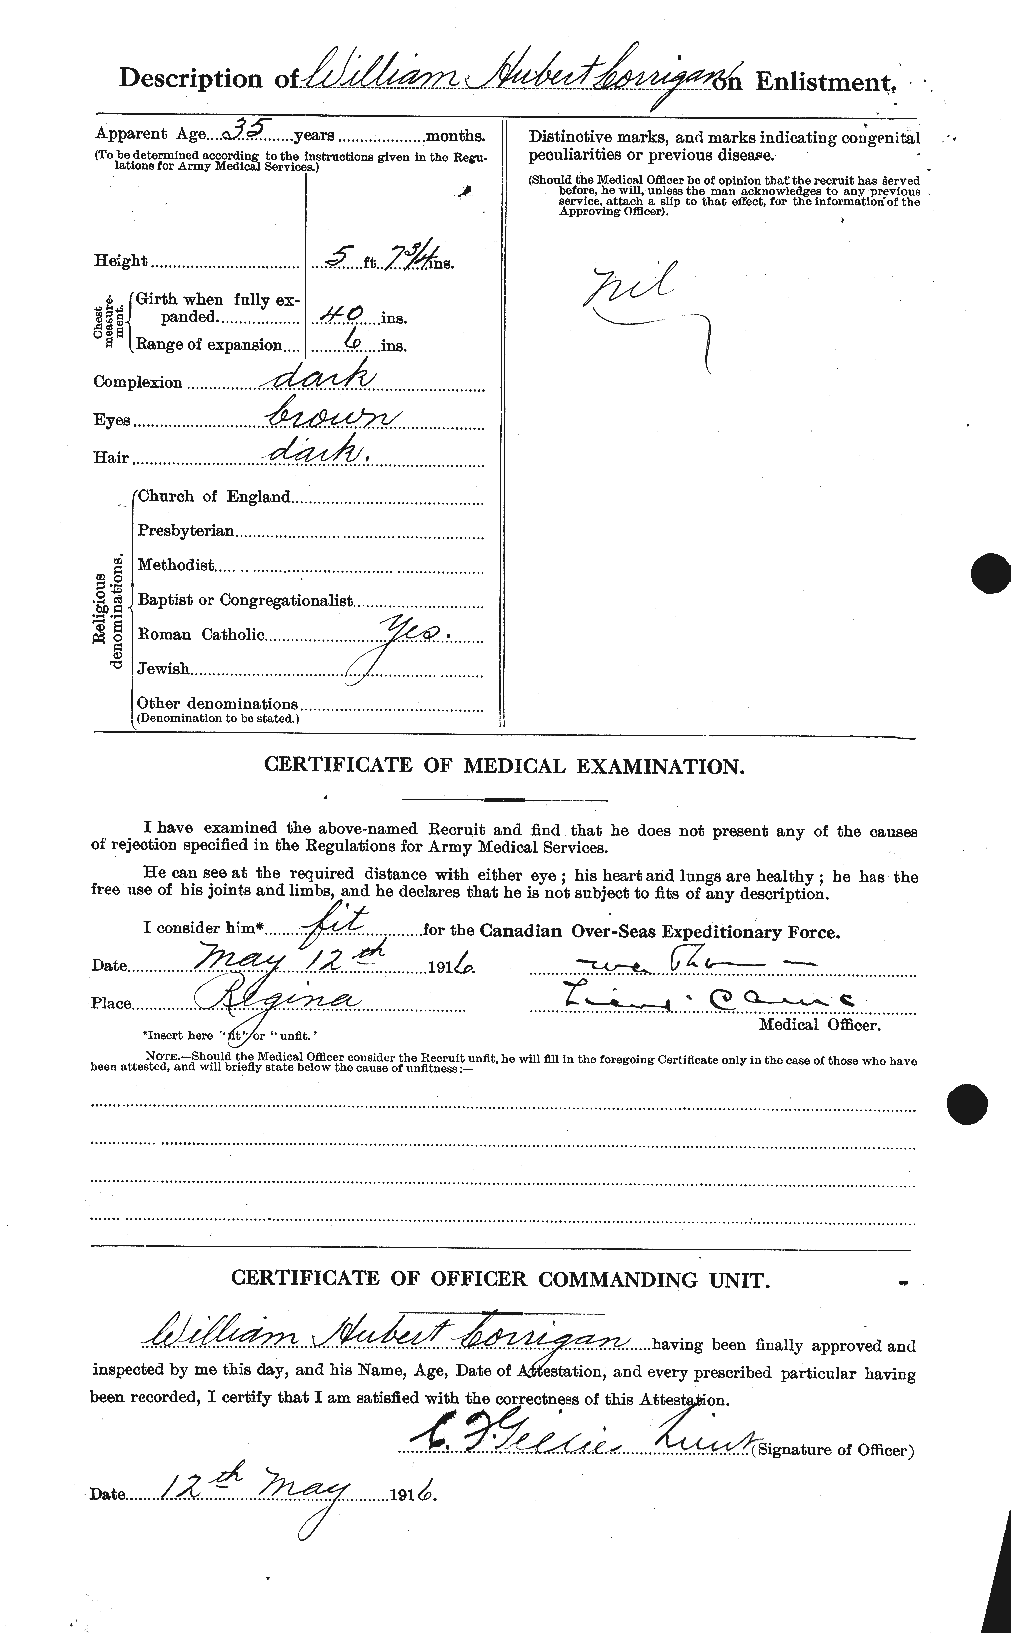 Dossiers du Personnel de la Première Guerre mondiale - CEC 054673b